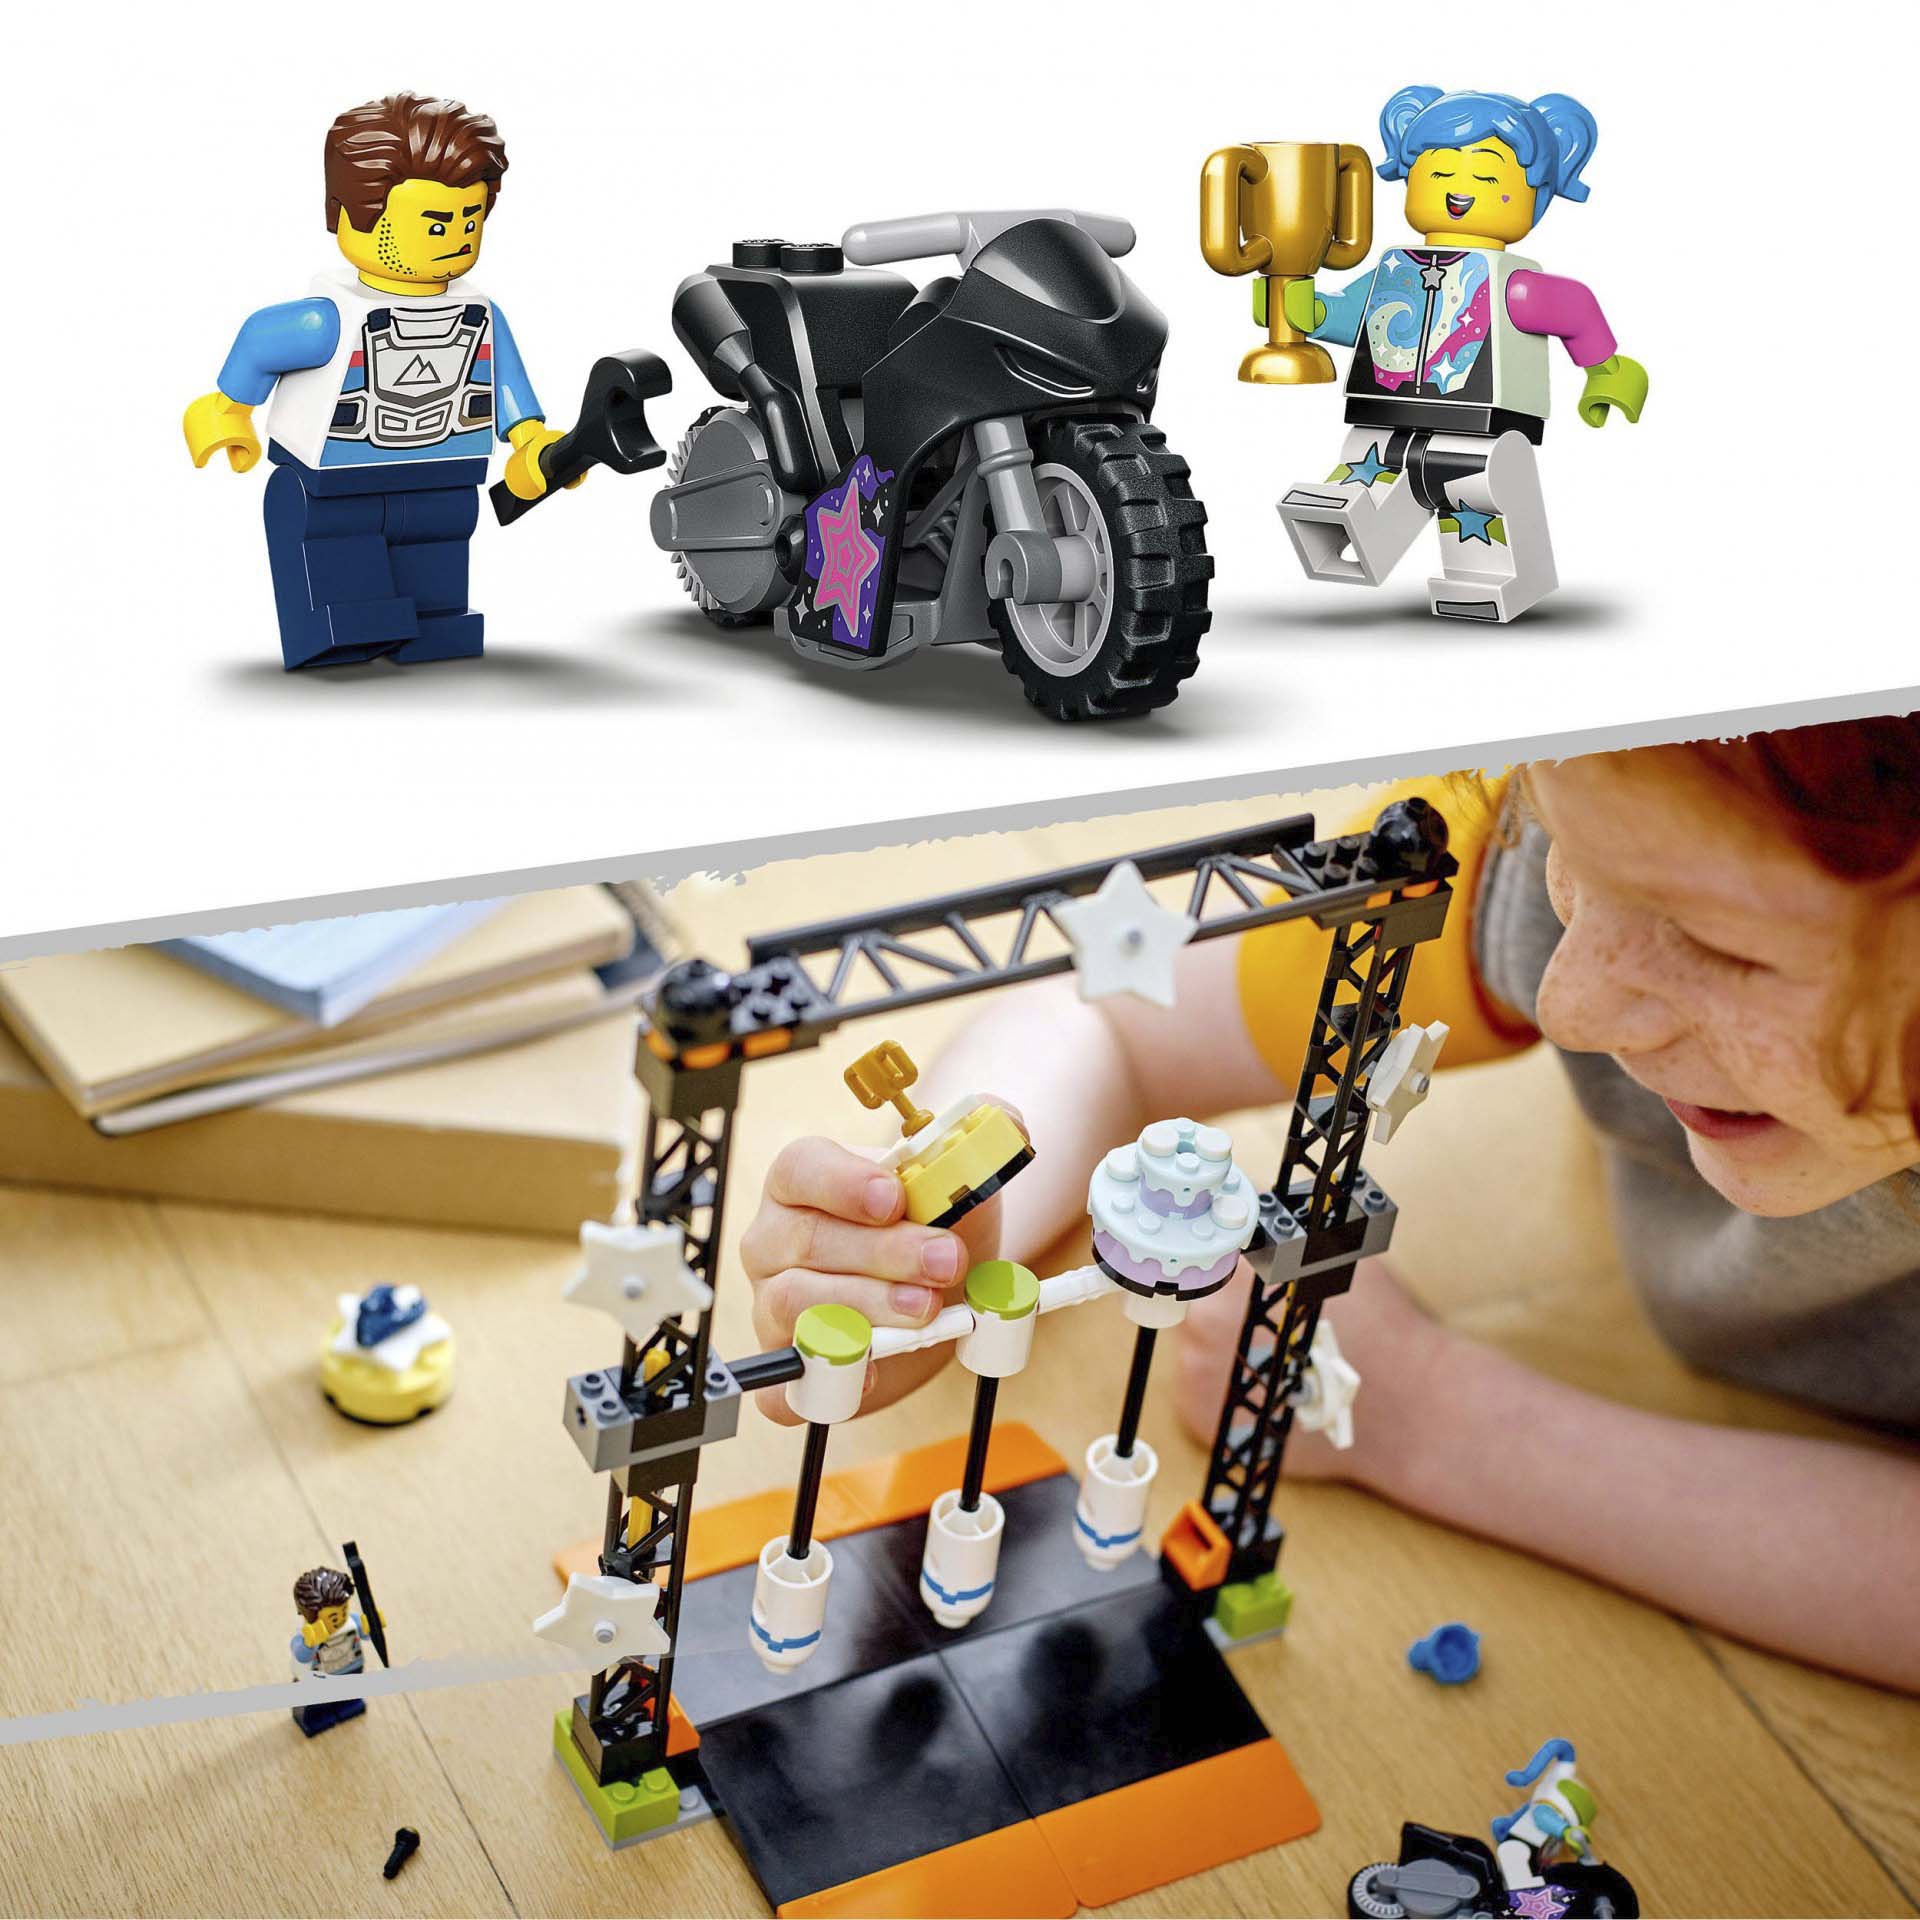 LEGO City Stuntz Sfida Acrobatica KO, Moto Giocattolo Carica e Vai con Minifigur 60341, , large